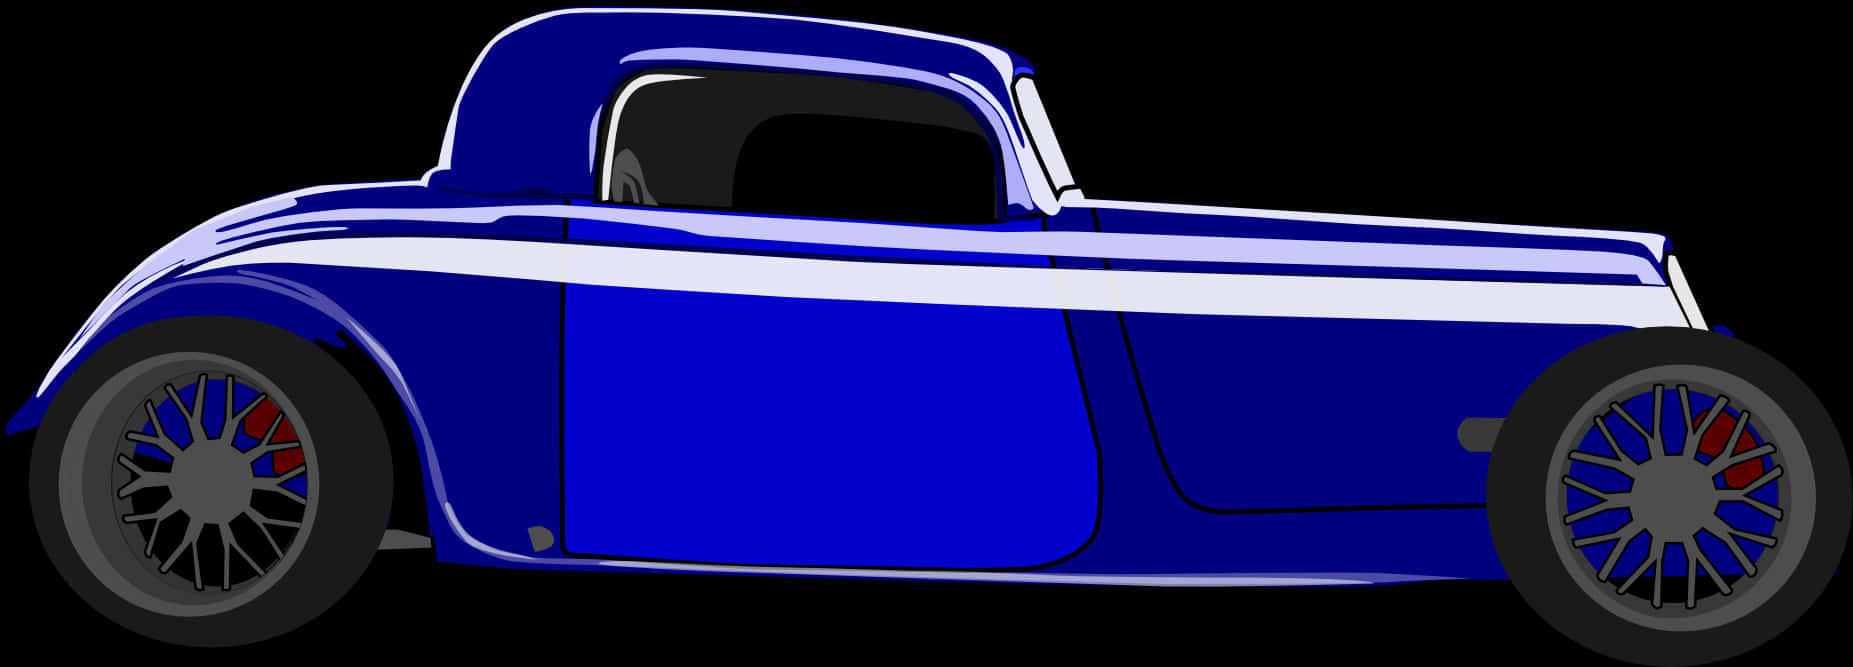 Blue Vintage Hotrod Vector Illustration